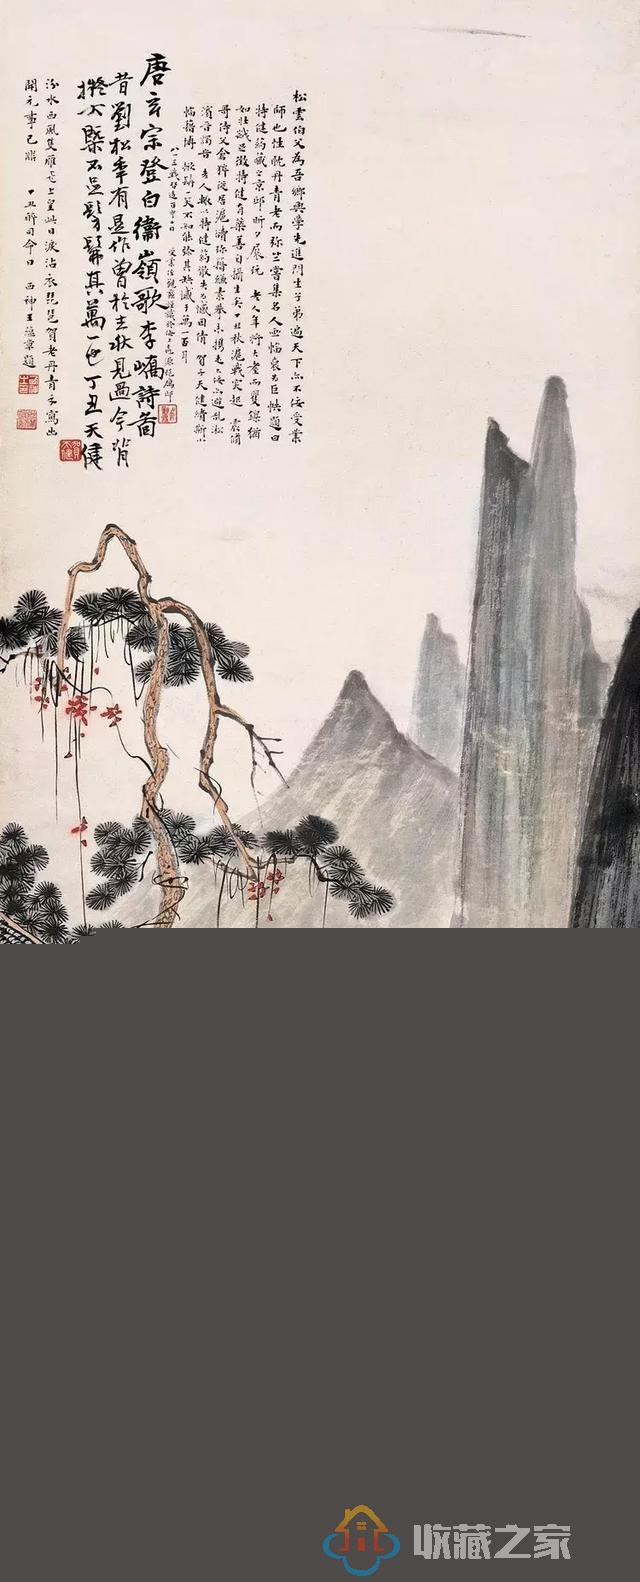 贺天健 | 中国画意境，如何浮出诗意？